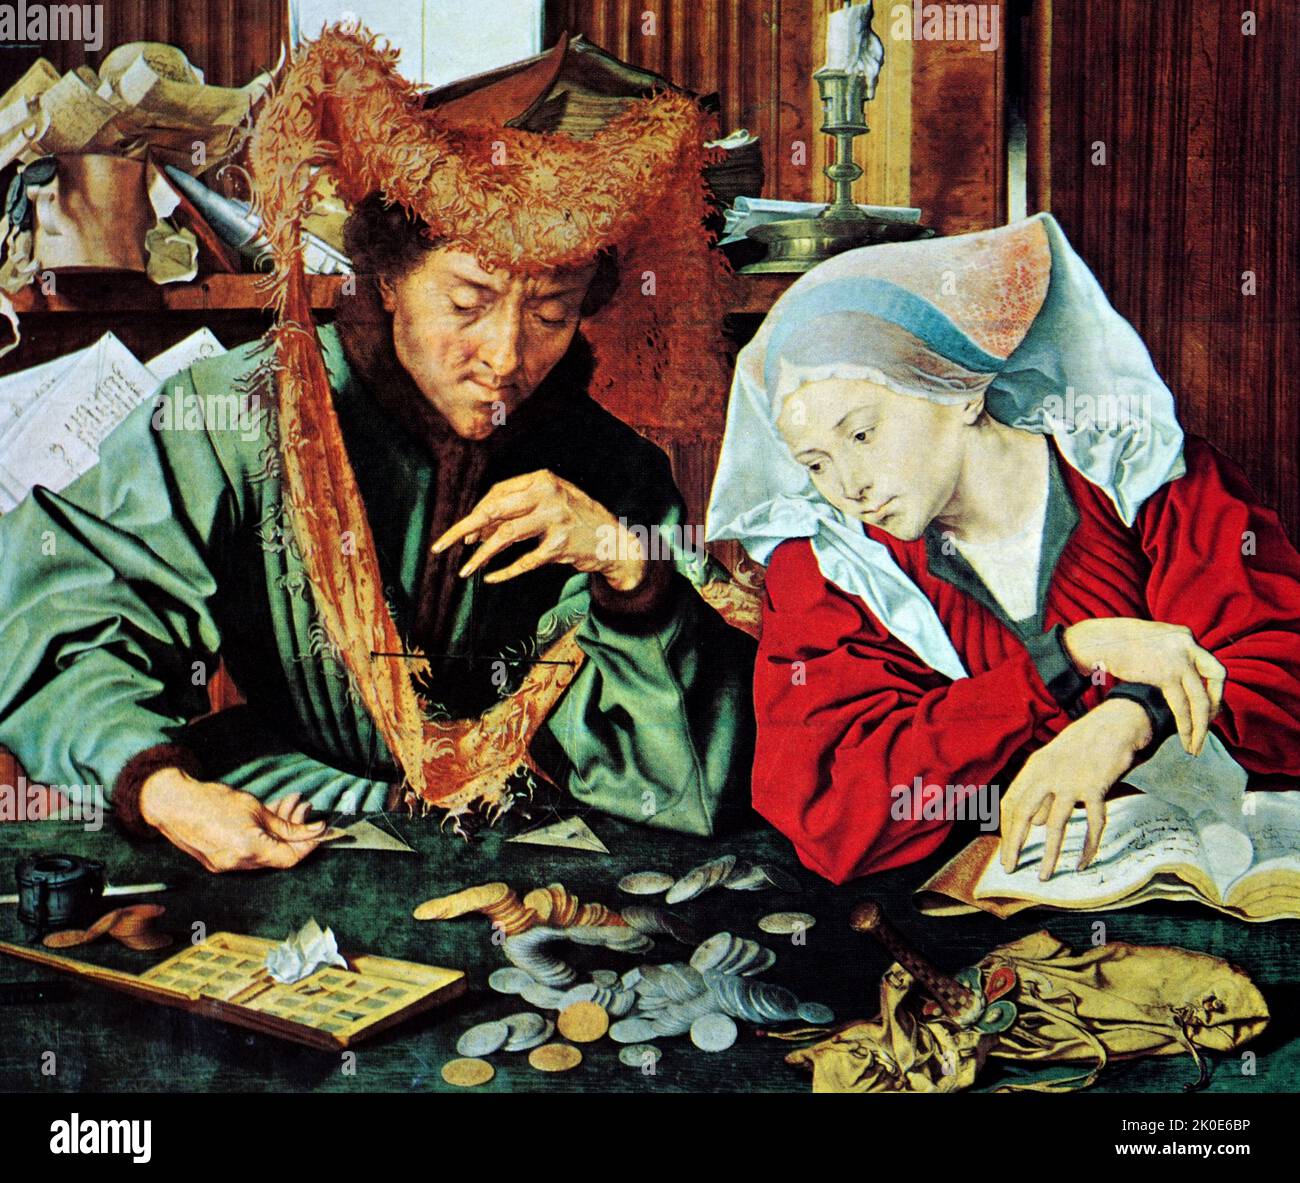 Der Geldwechsler und seine Frau (1539), Museo del Prado, Madrid, von Marinus van Reymerswaele oder Marinus van Reymerswale (c. 1490 - c. L 1546, S. Holländischer Renaissance-Maler, der vor allem für seine Genreszenen und religiösen Kompositionen bekannt ist. Stockfoto